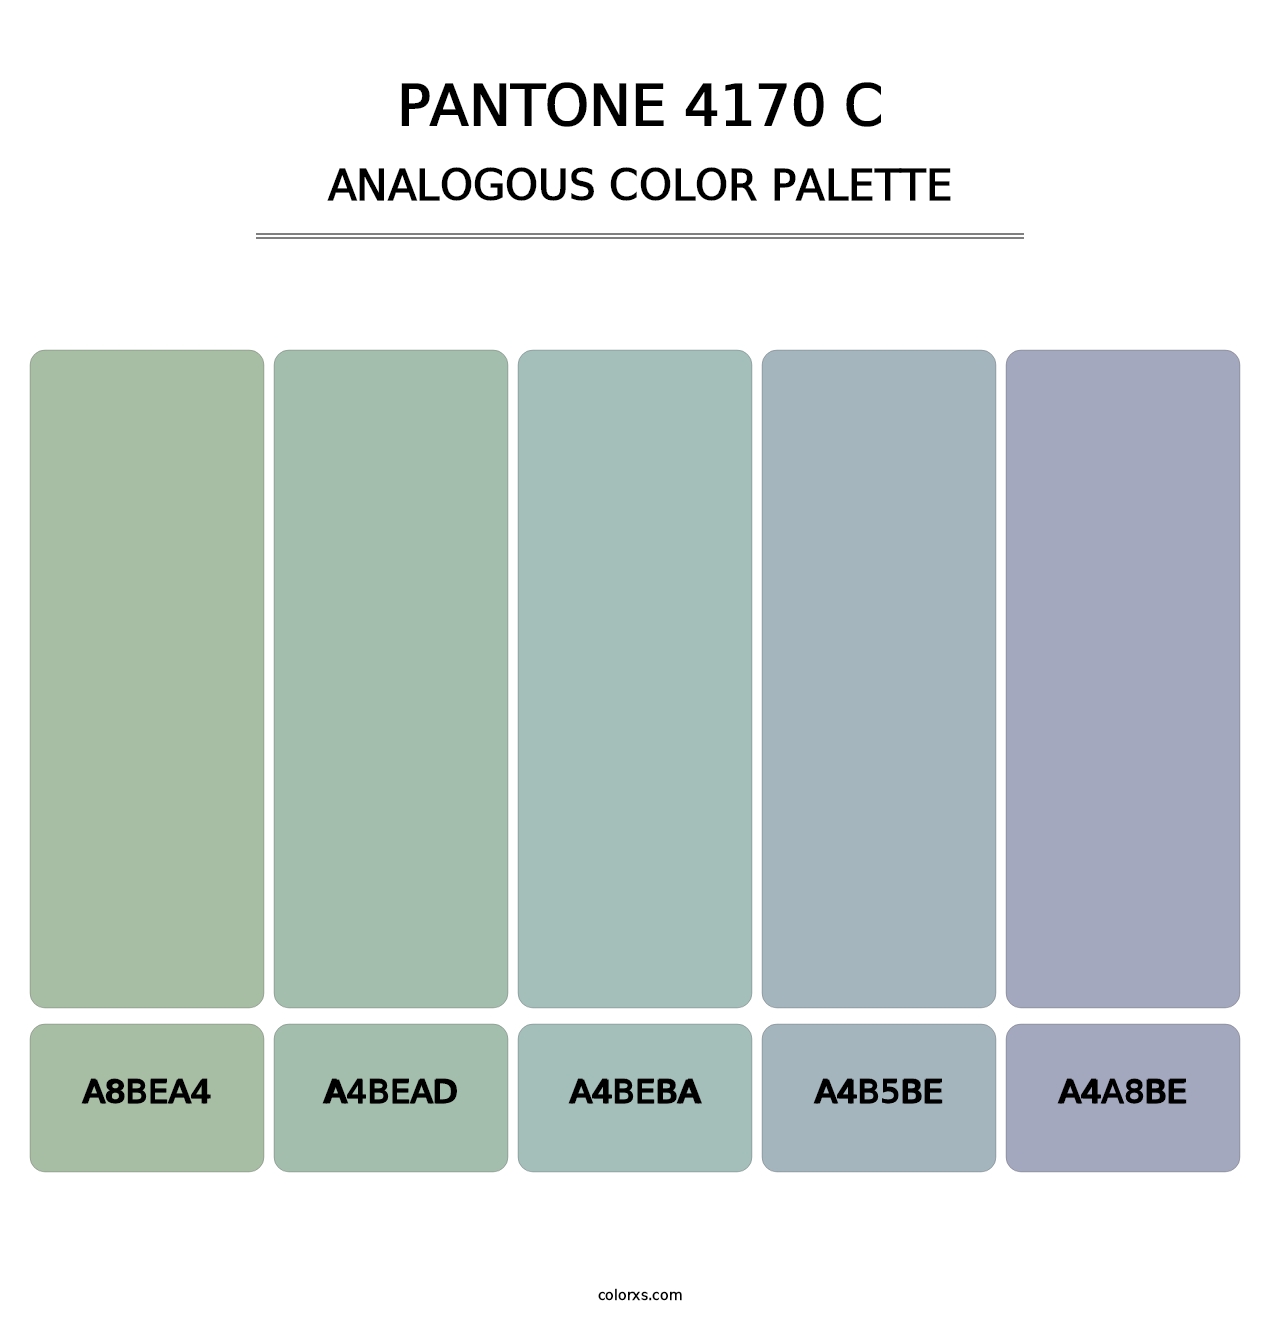 PANTONE 4170 C - Analogous Color Palette